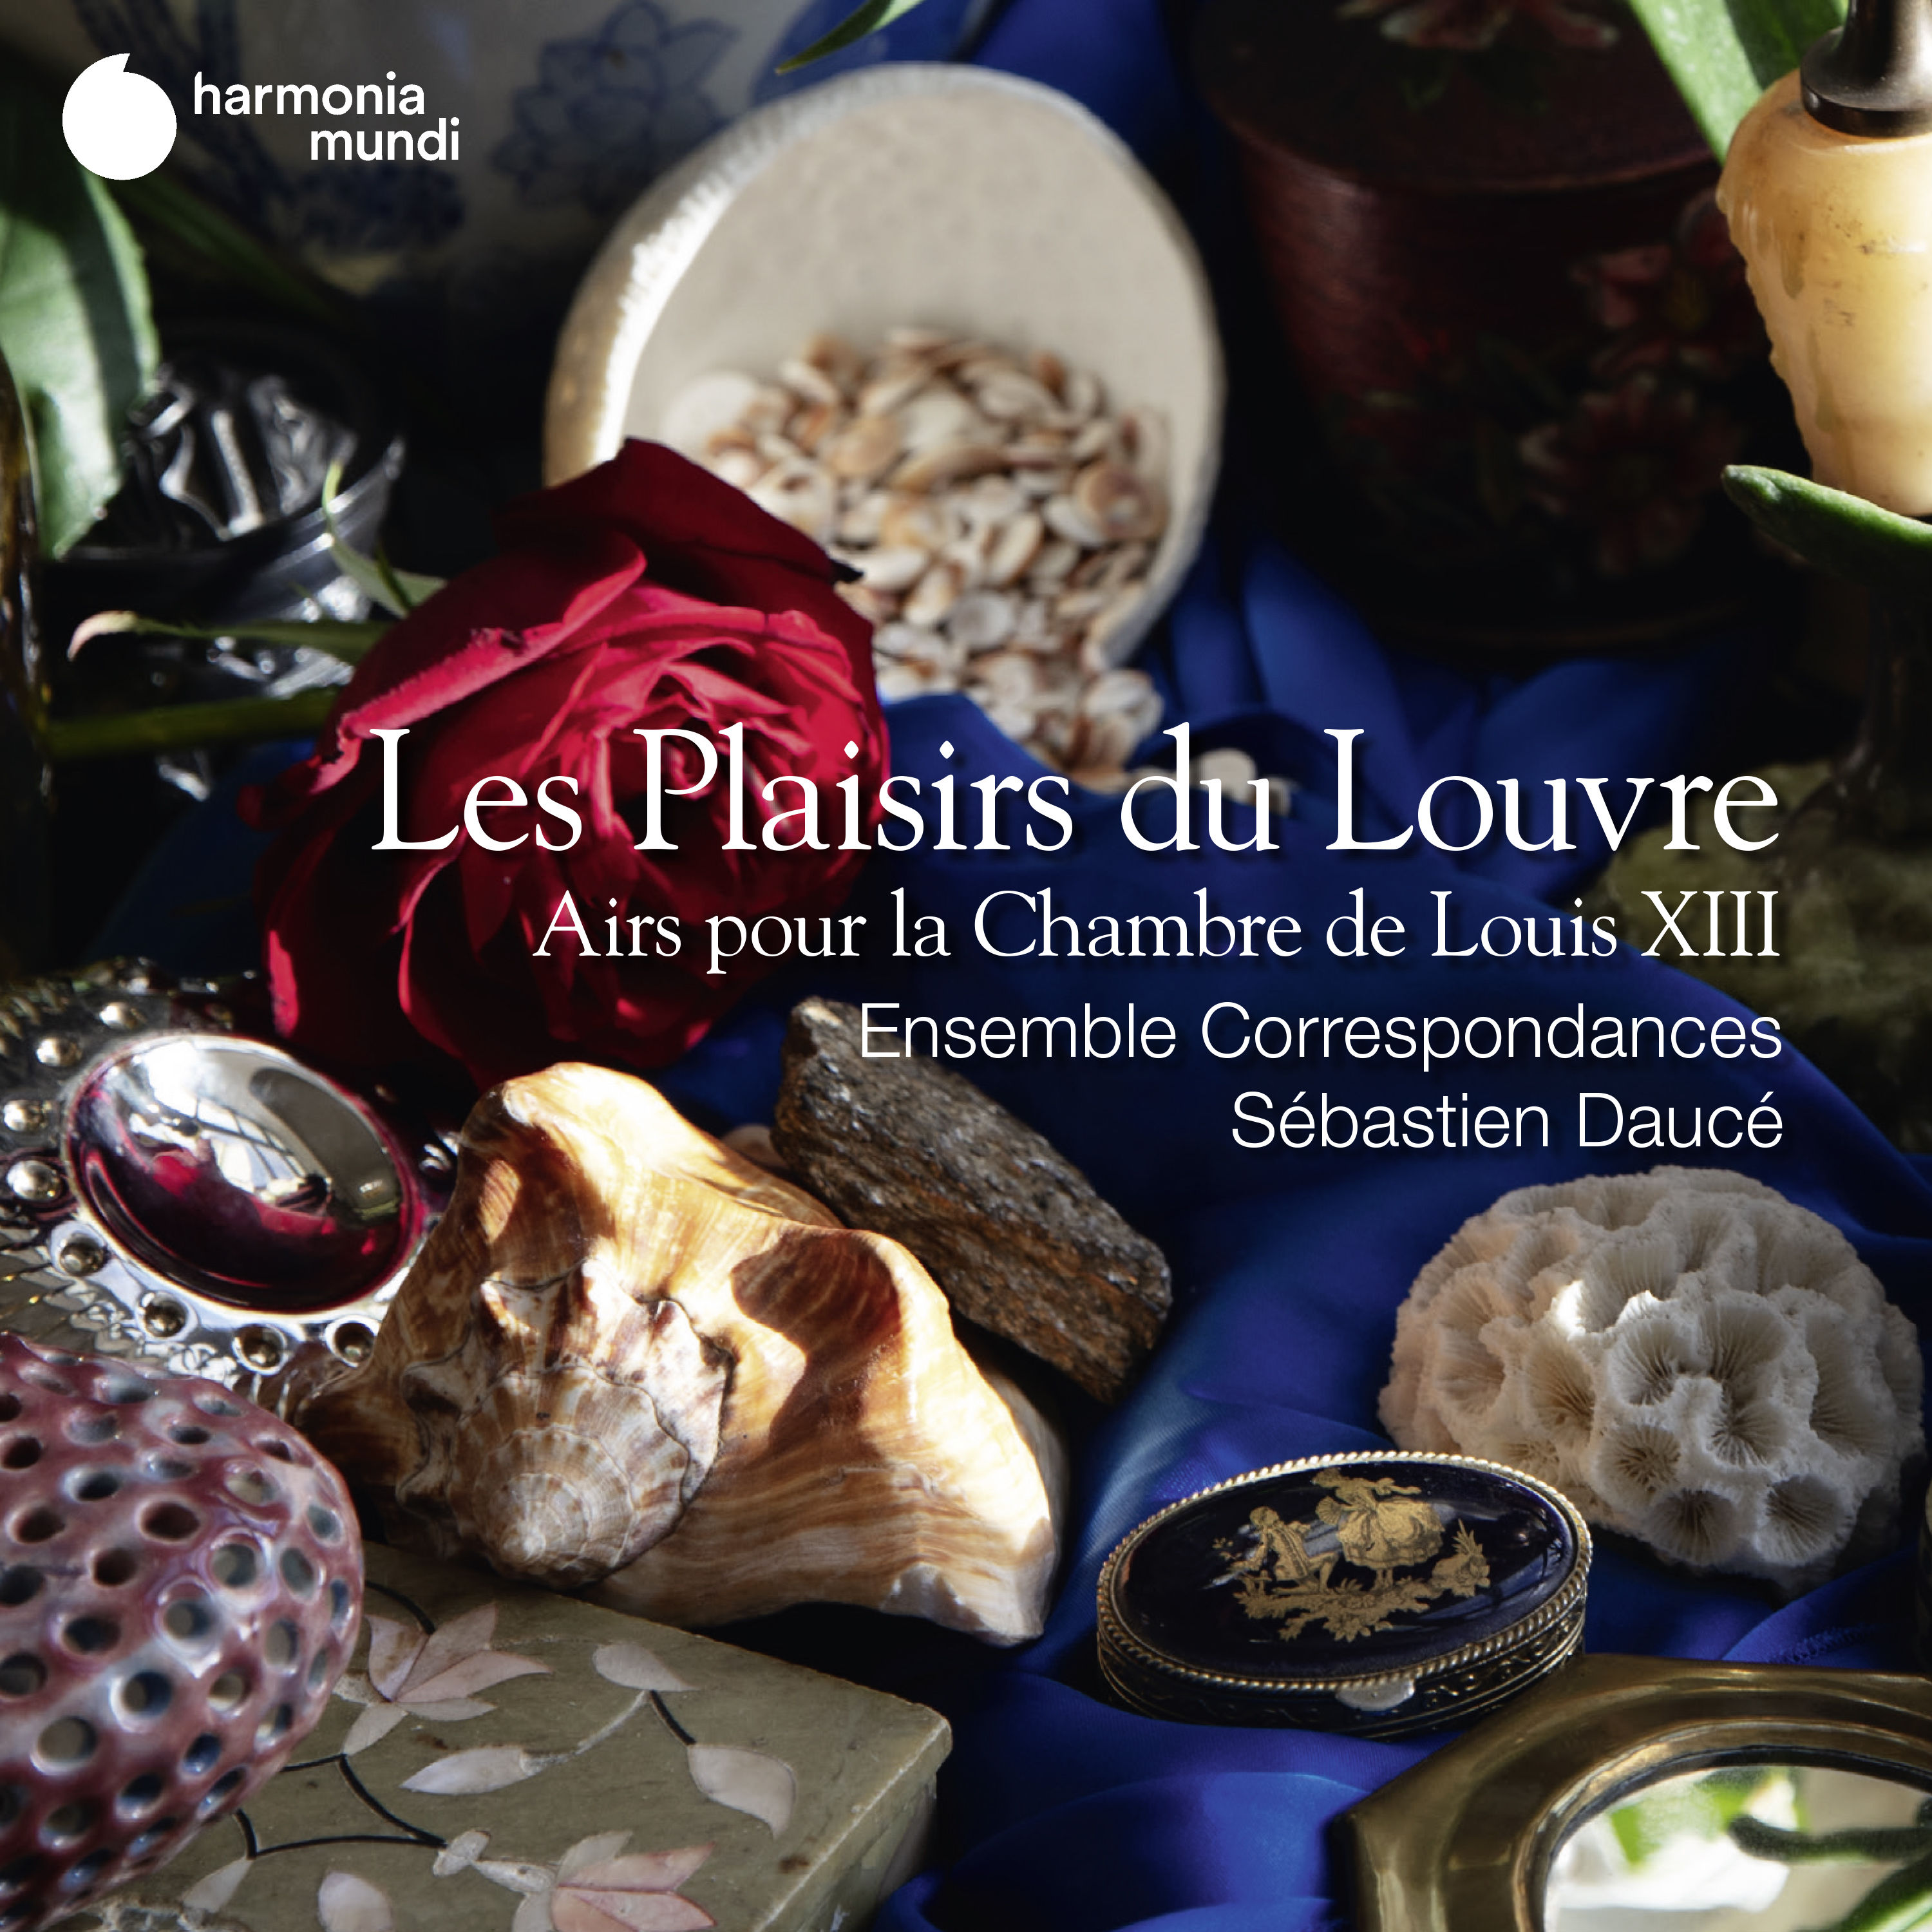 Ensemble Correspondances, Sebastien Dauce - Les Plaisirs du Louvre. Airs pour la Chambre de Louis XIII (2020) [FLAC 24bit/96kHz]